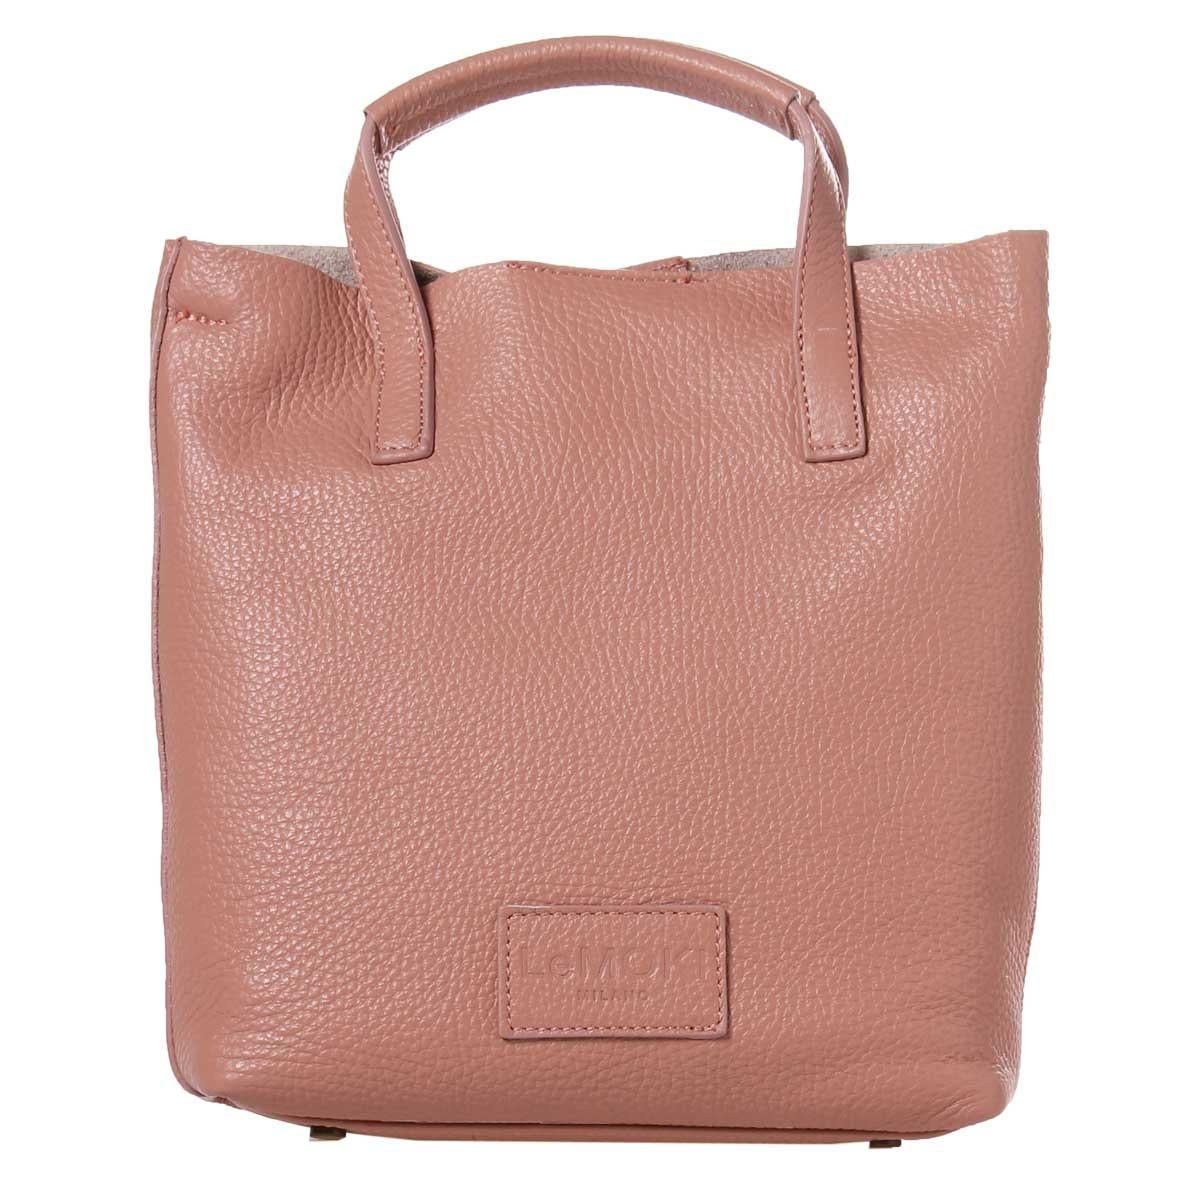 Brown Pink leather handbag shoulder bag NWOT